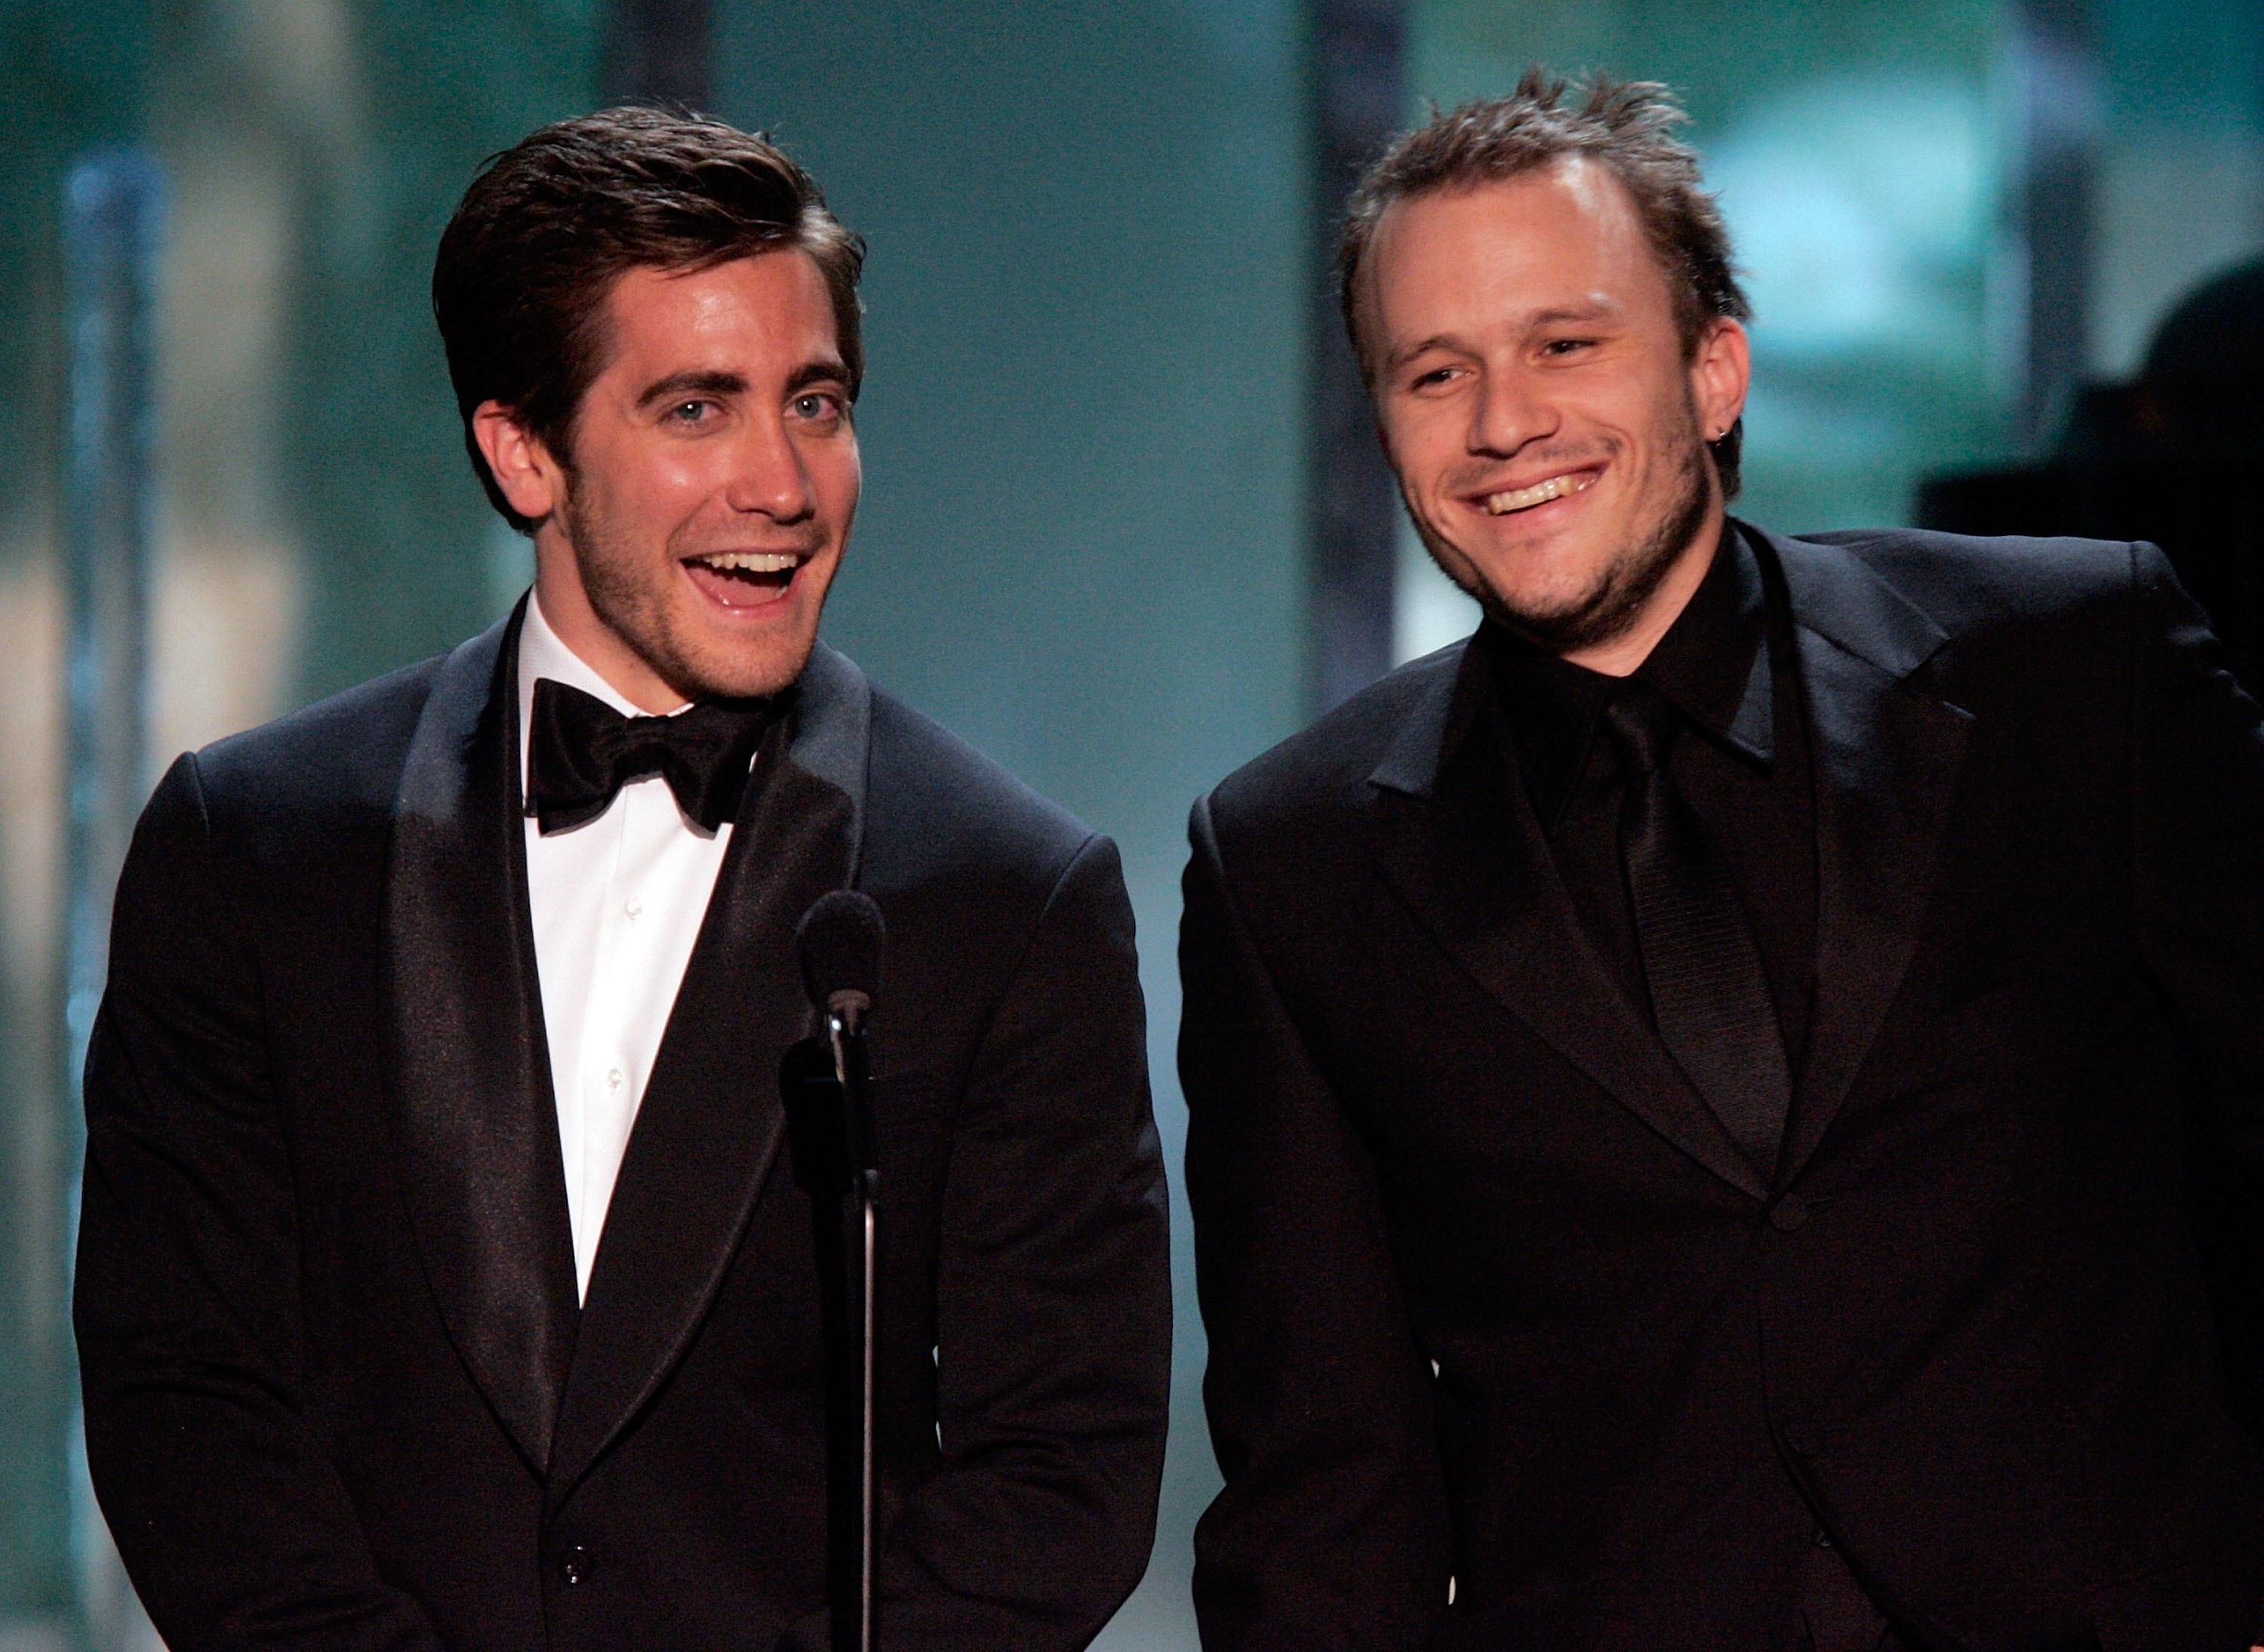 Jake Gyllenhaal and Heath presenting onstage